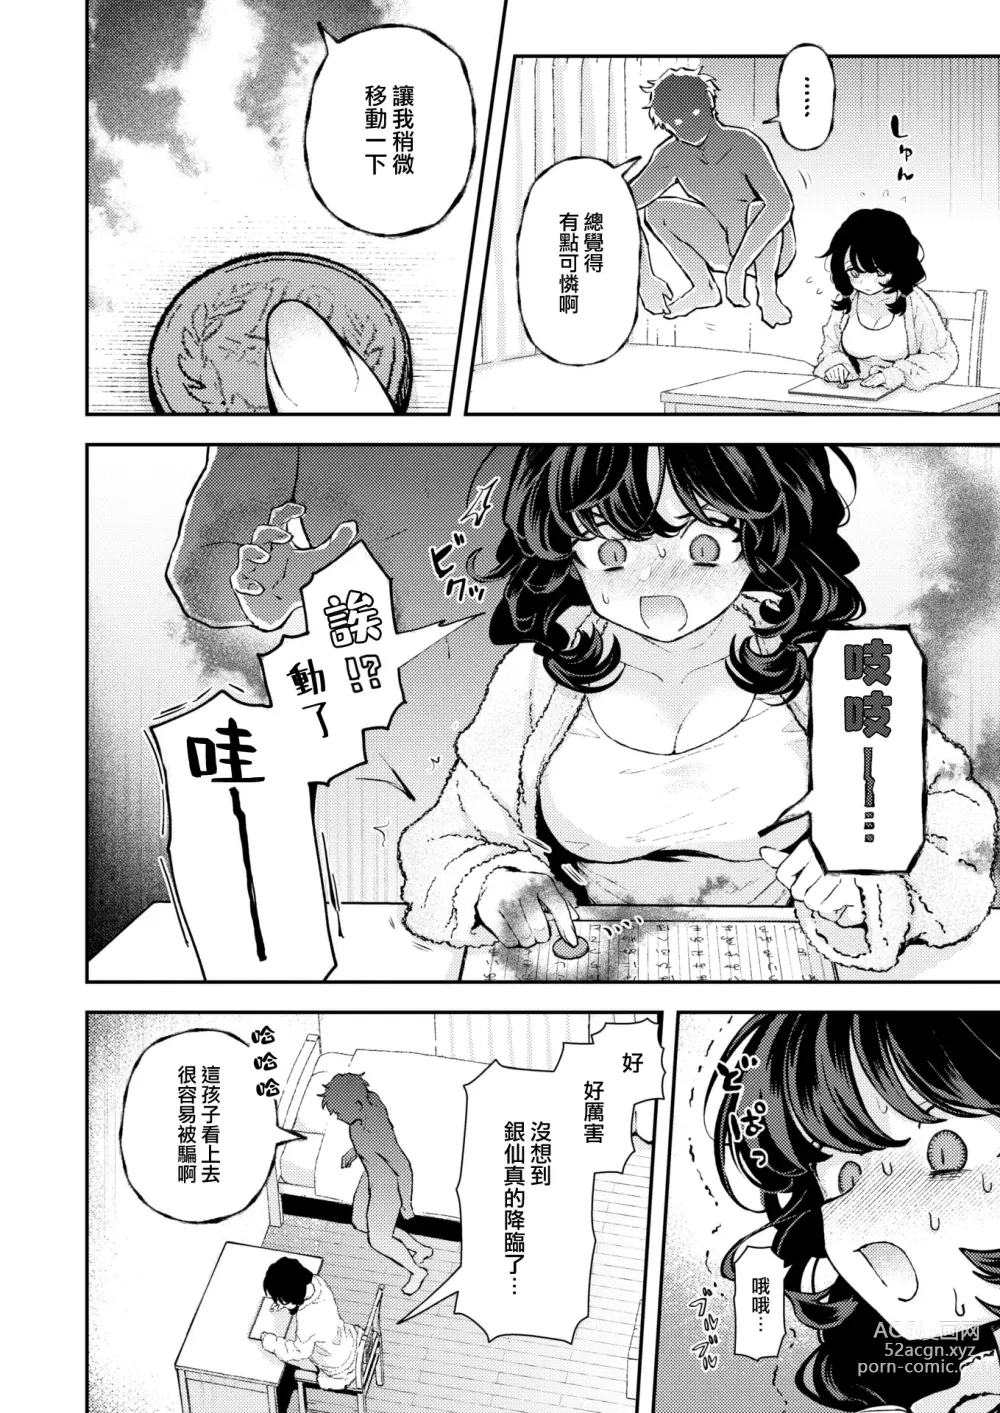 Page 5 of manga Hitori de Shinaide